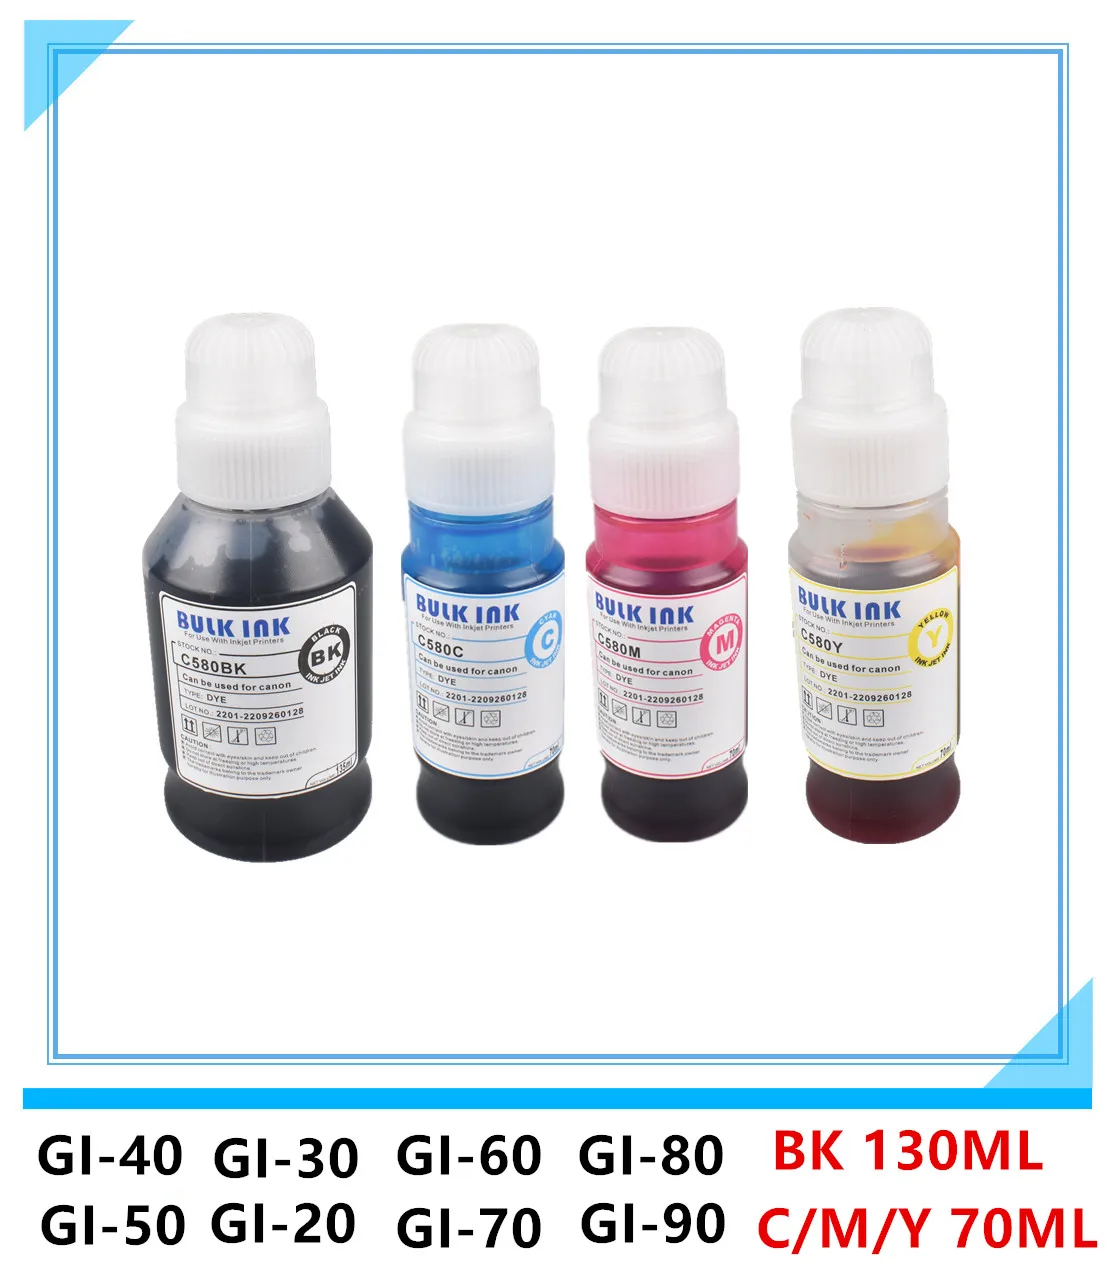 

compatible GI-40 GI-50 GI-60 GI-70 GI-80 GI-90 GI-20 Dye Ink Refill Kit for Canon PIXMA G5040 G6040 G7040 G5050 G6050 G7050